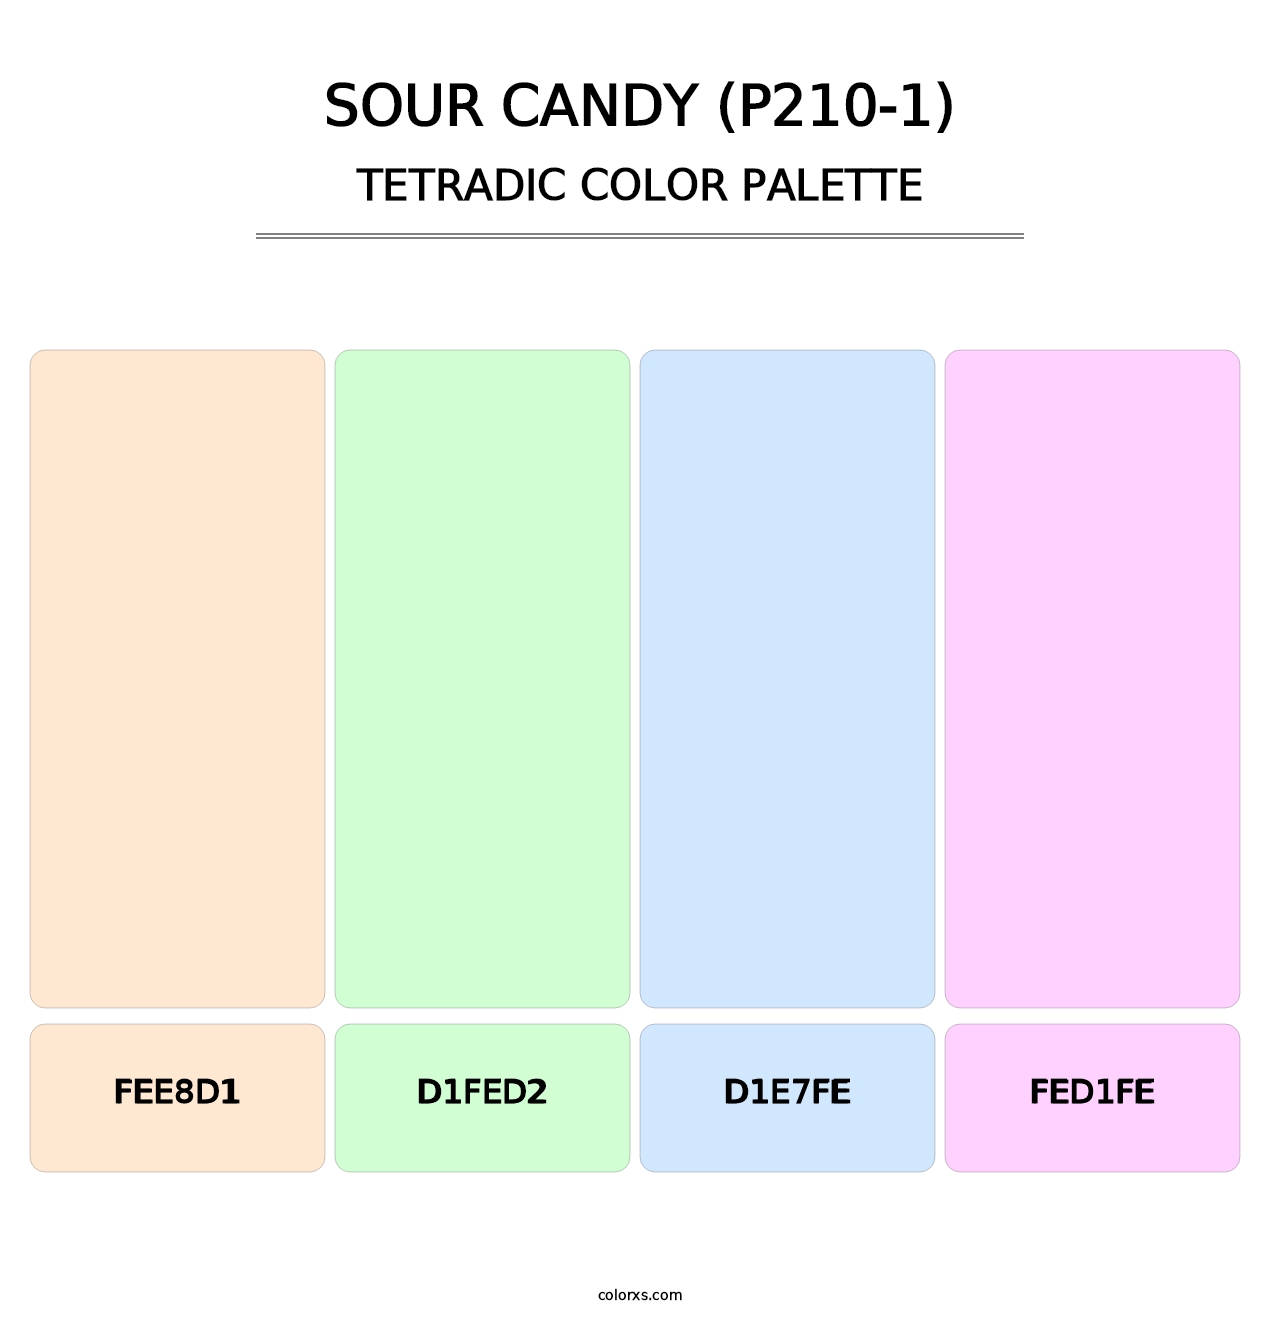 Sour Candy (P210-1) - Tetradic Color Palette